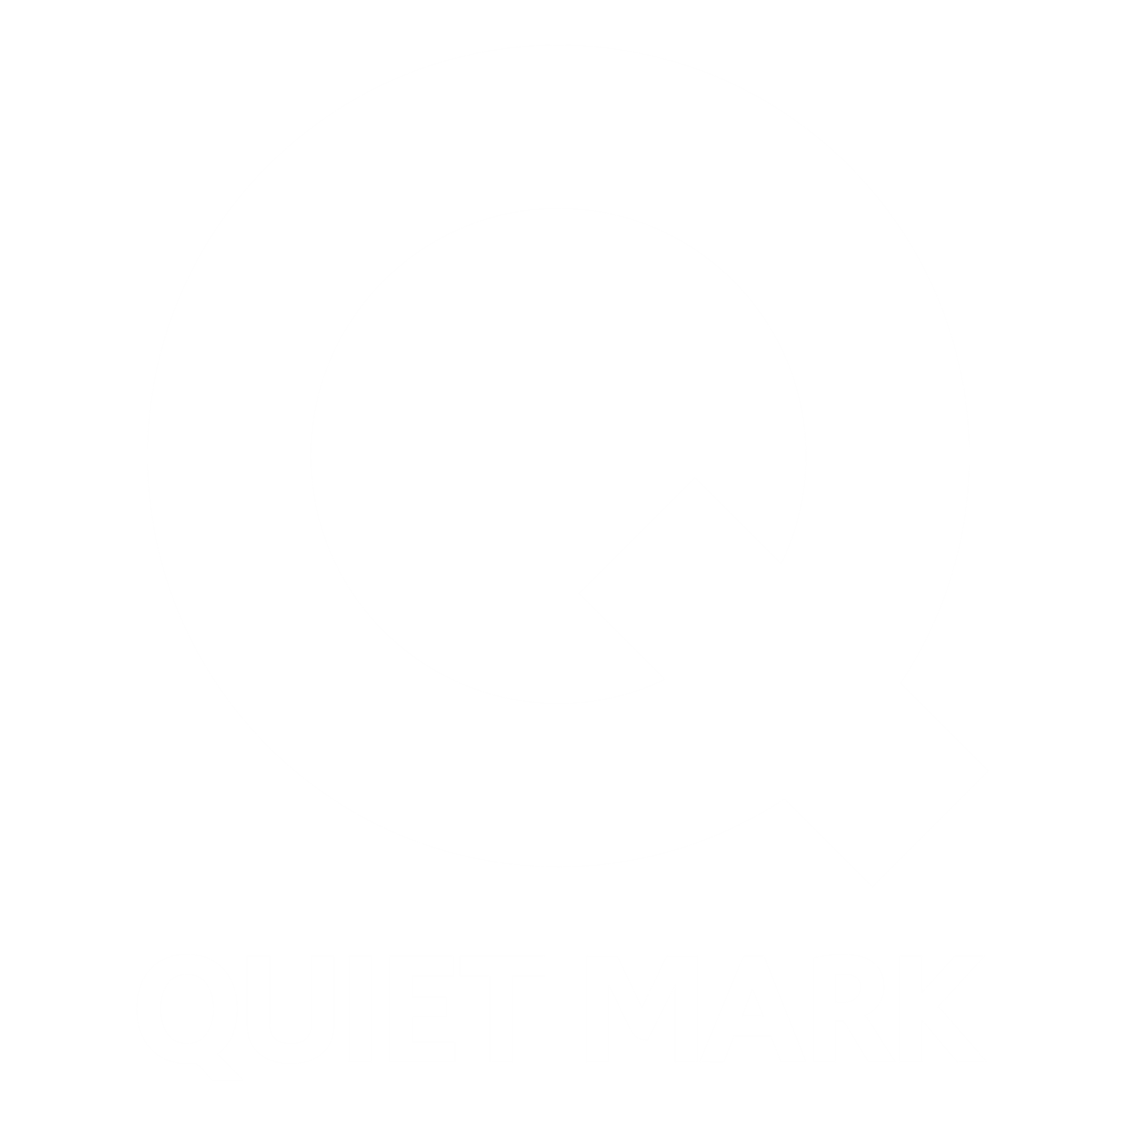 Quiet Mark accredited